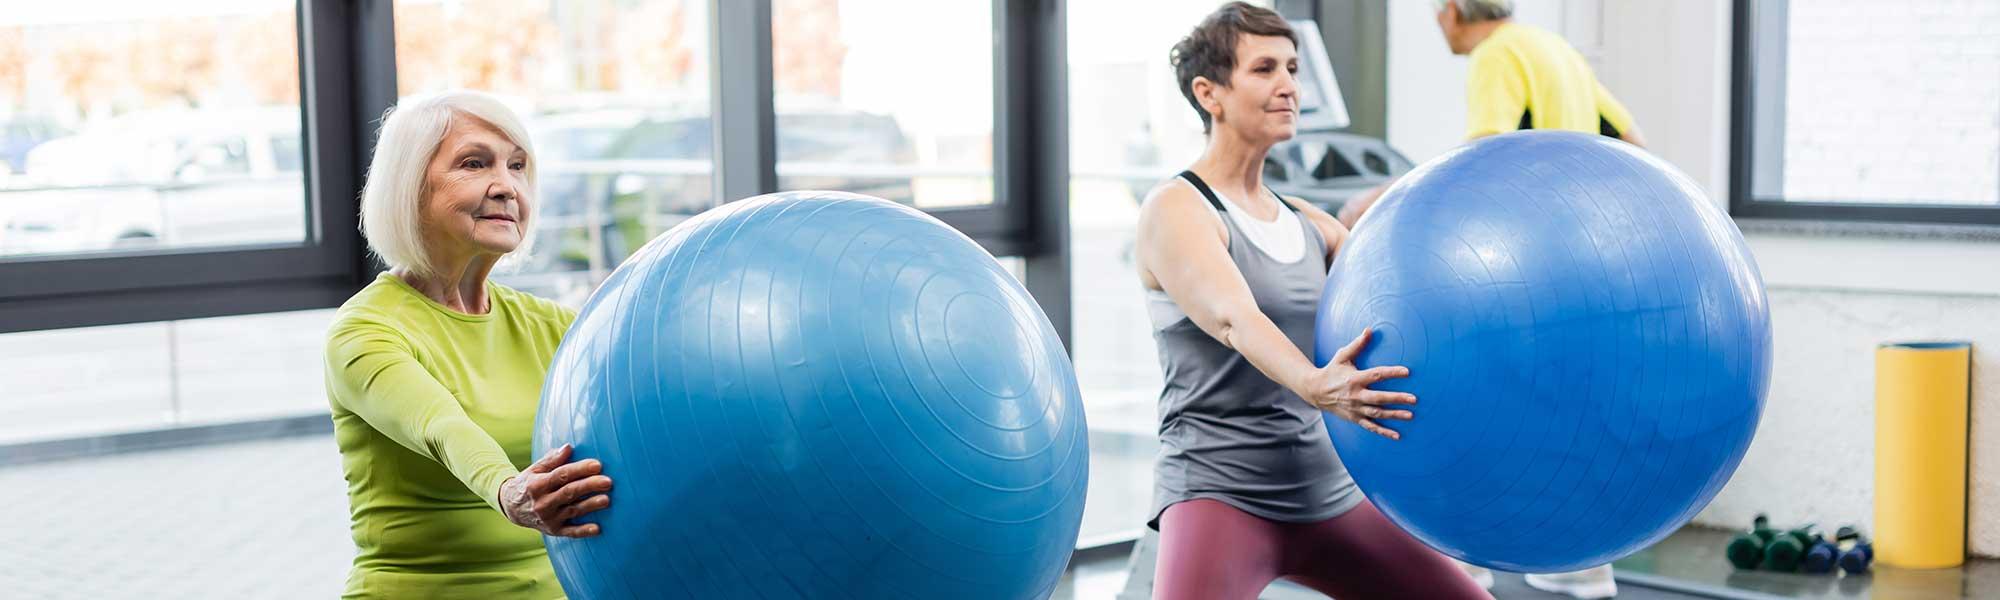 Le Pilates fait travailler les muscles profonds pour améliorer l’équilibre et la posture